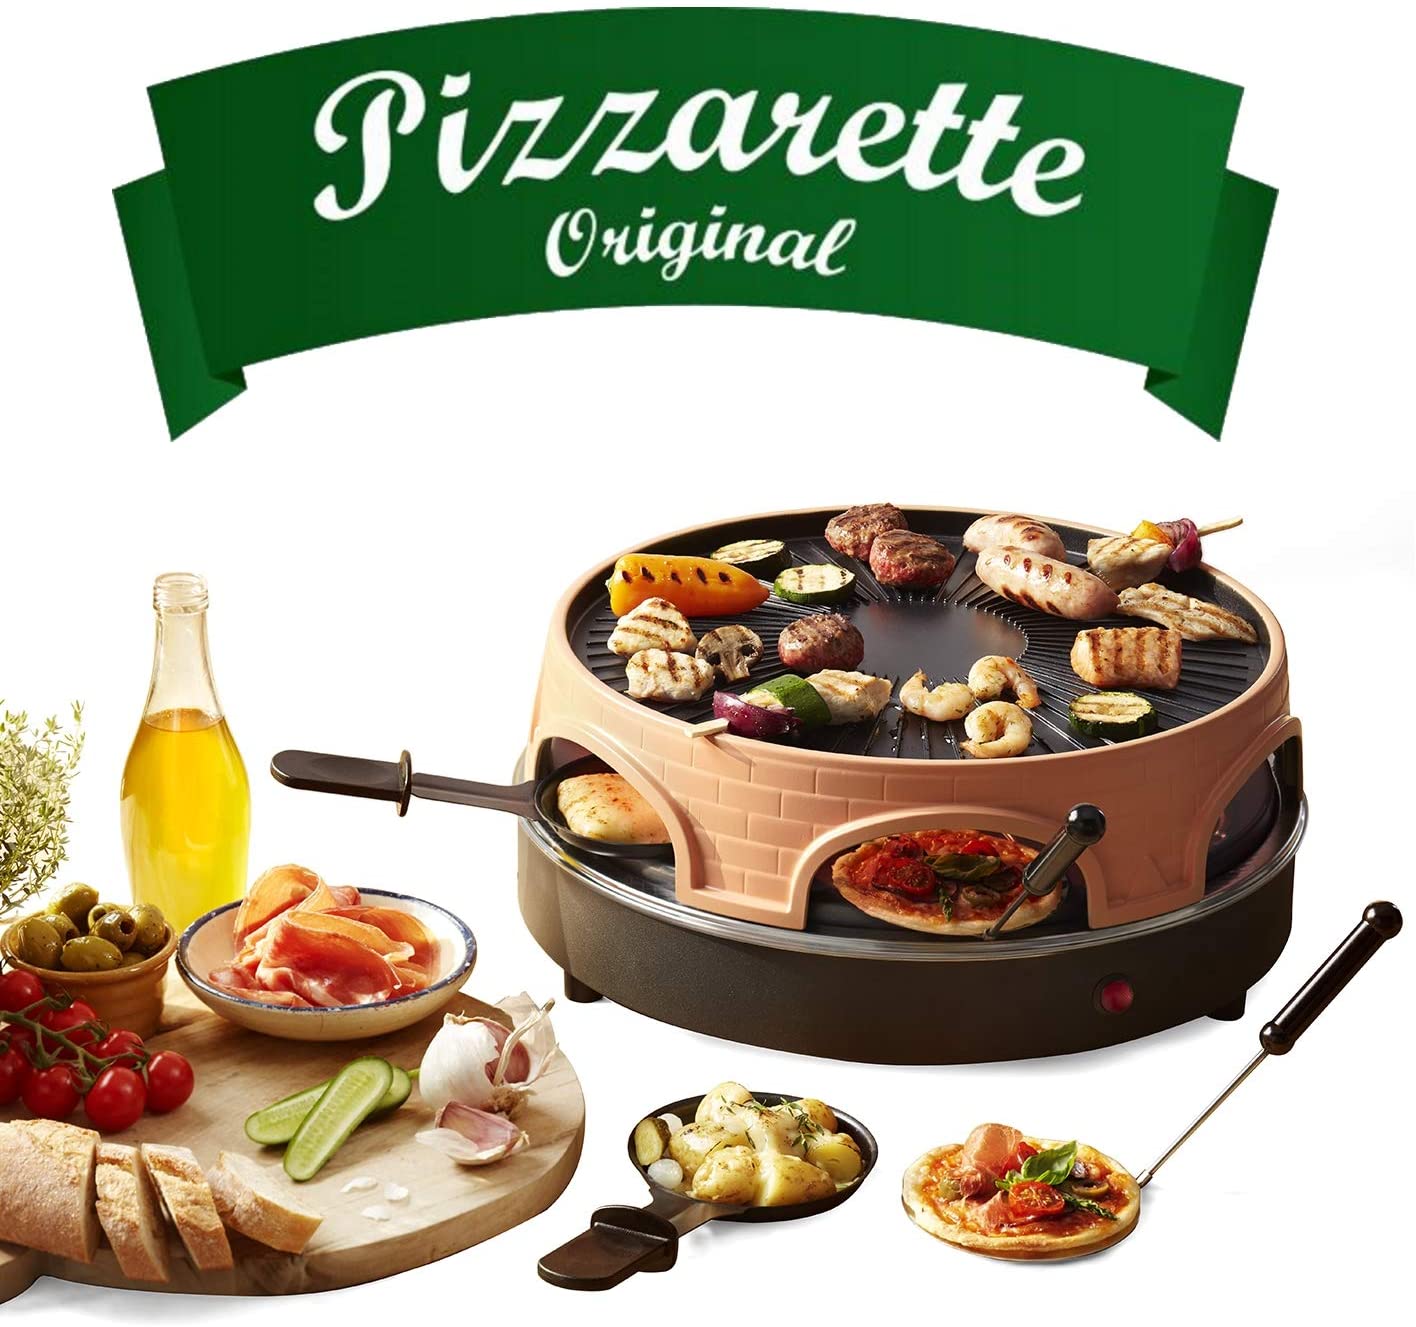 Emerio Pizza Oven, Pizzarette the Original, 3 in 1 Pizza Raclette Grill, Patented Design, for Mini Pizza, Real Family Fun for 6 People, PO-113255.4